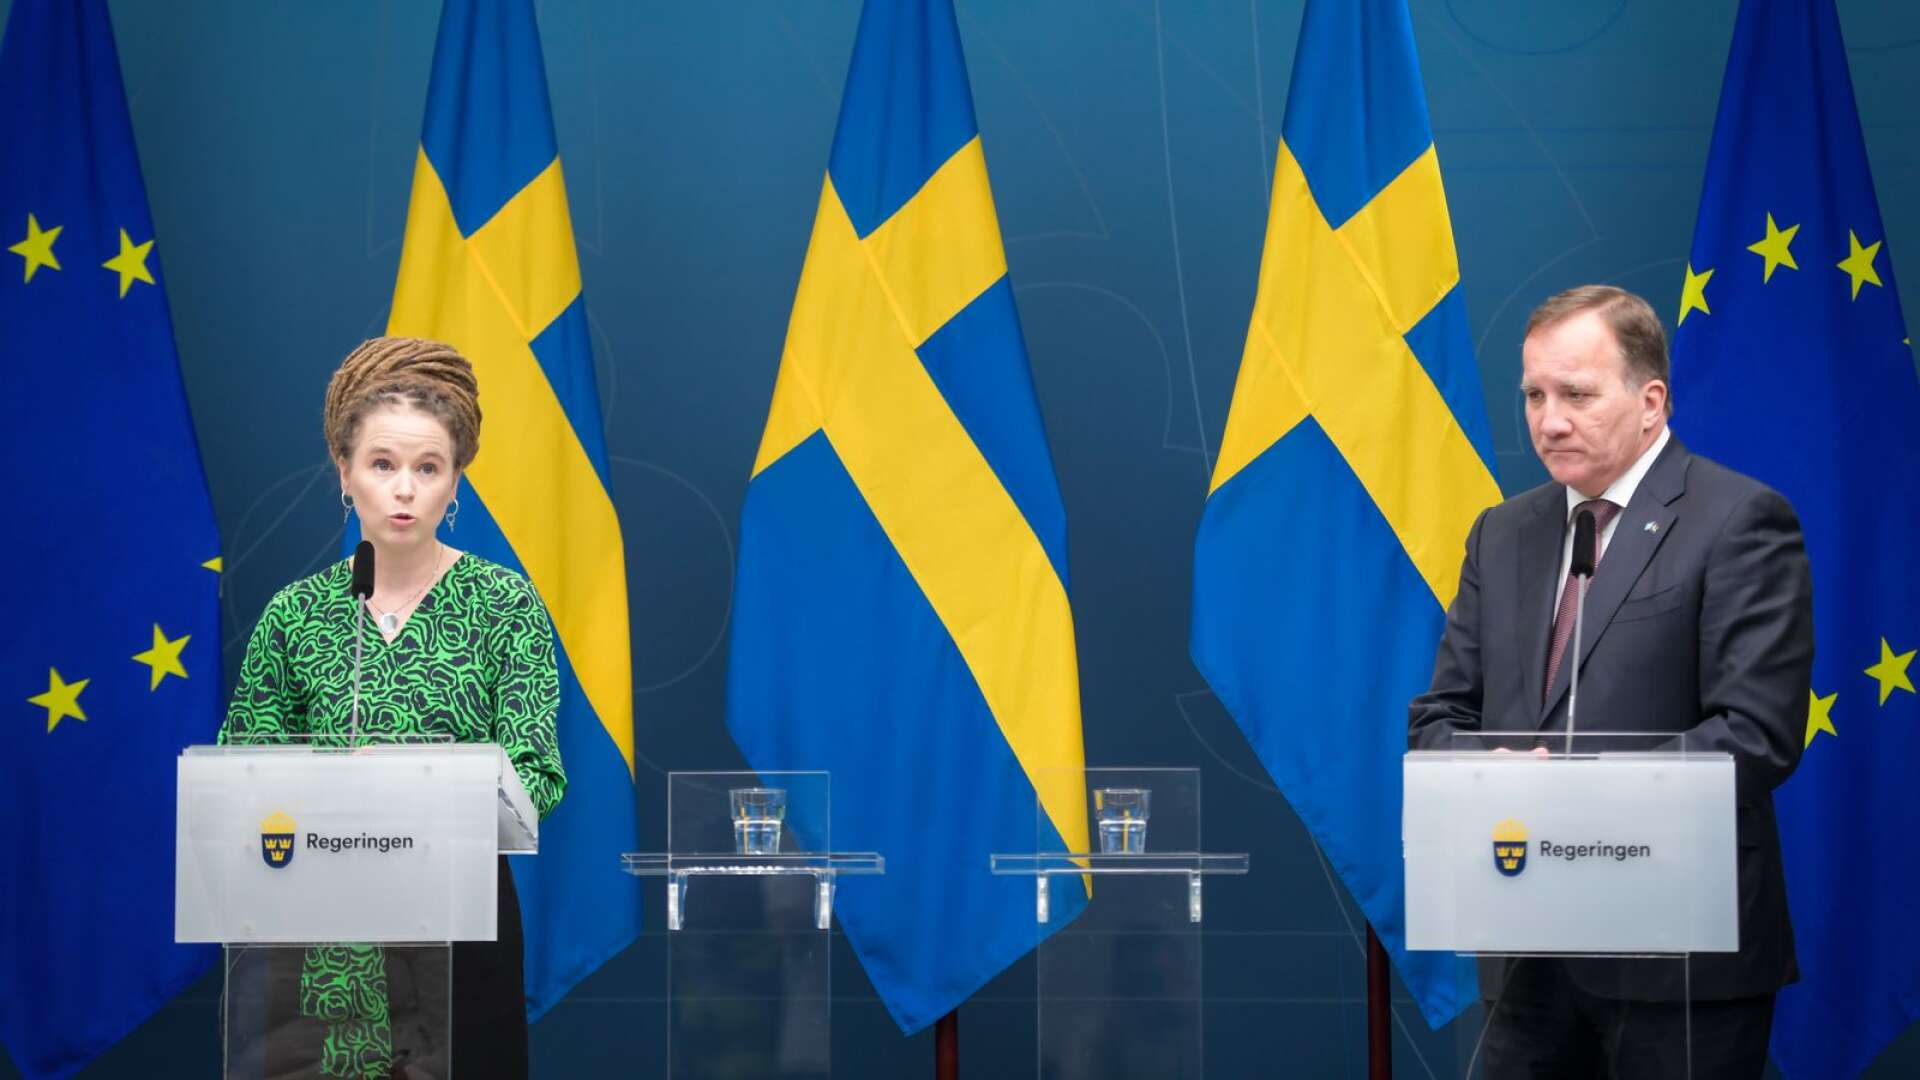 Kultur- och demokratiminister Amanda Lind och statsminister Stefan Löfven har fått mer i plånboken. Kul, tycker insändarskribenten...